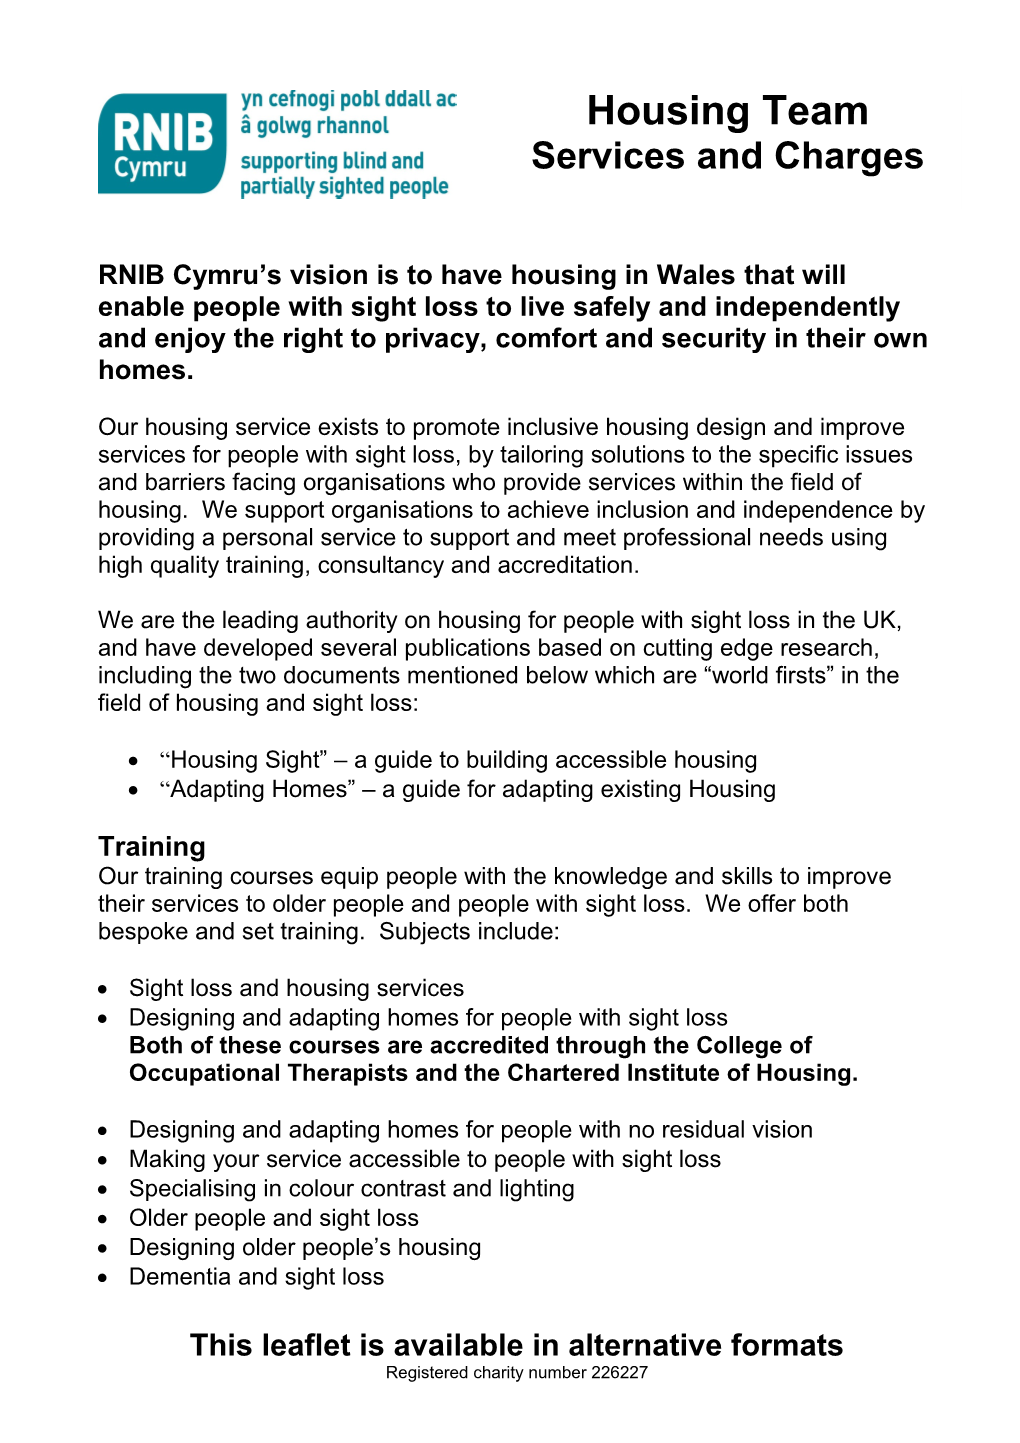 RNIB Cymru Housing Service